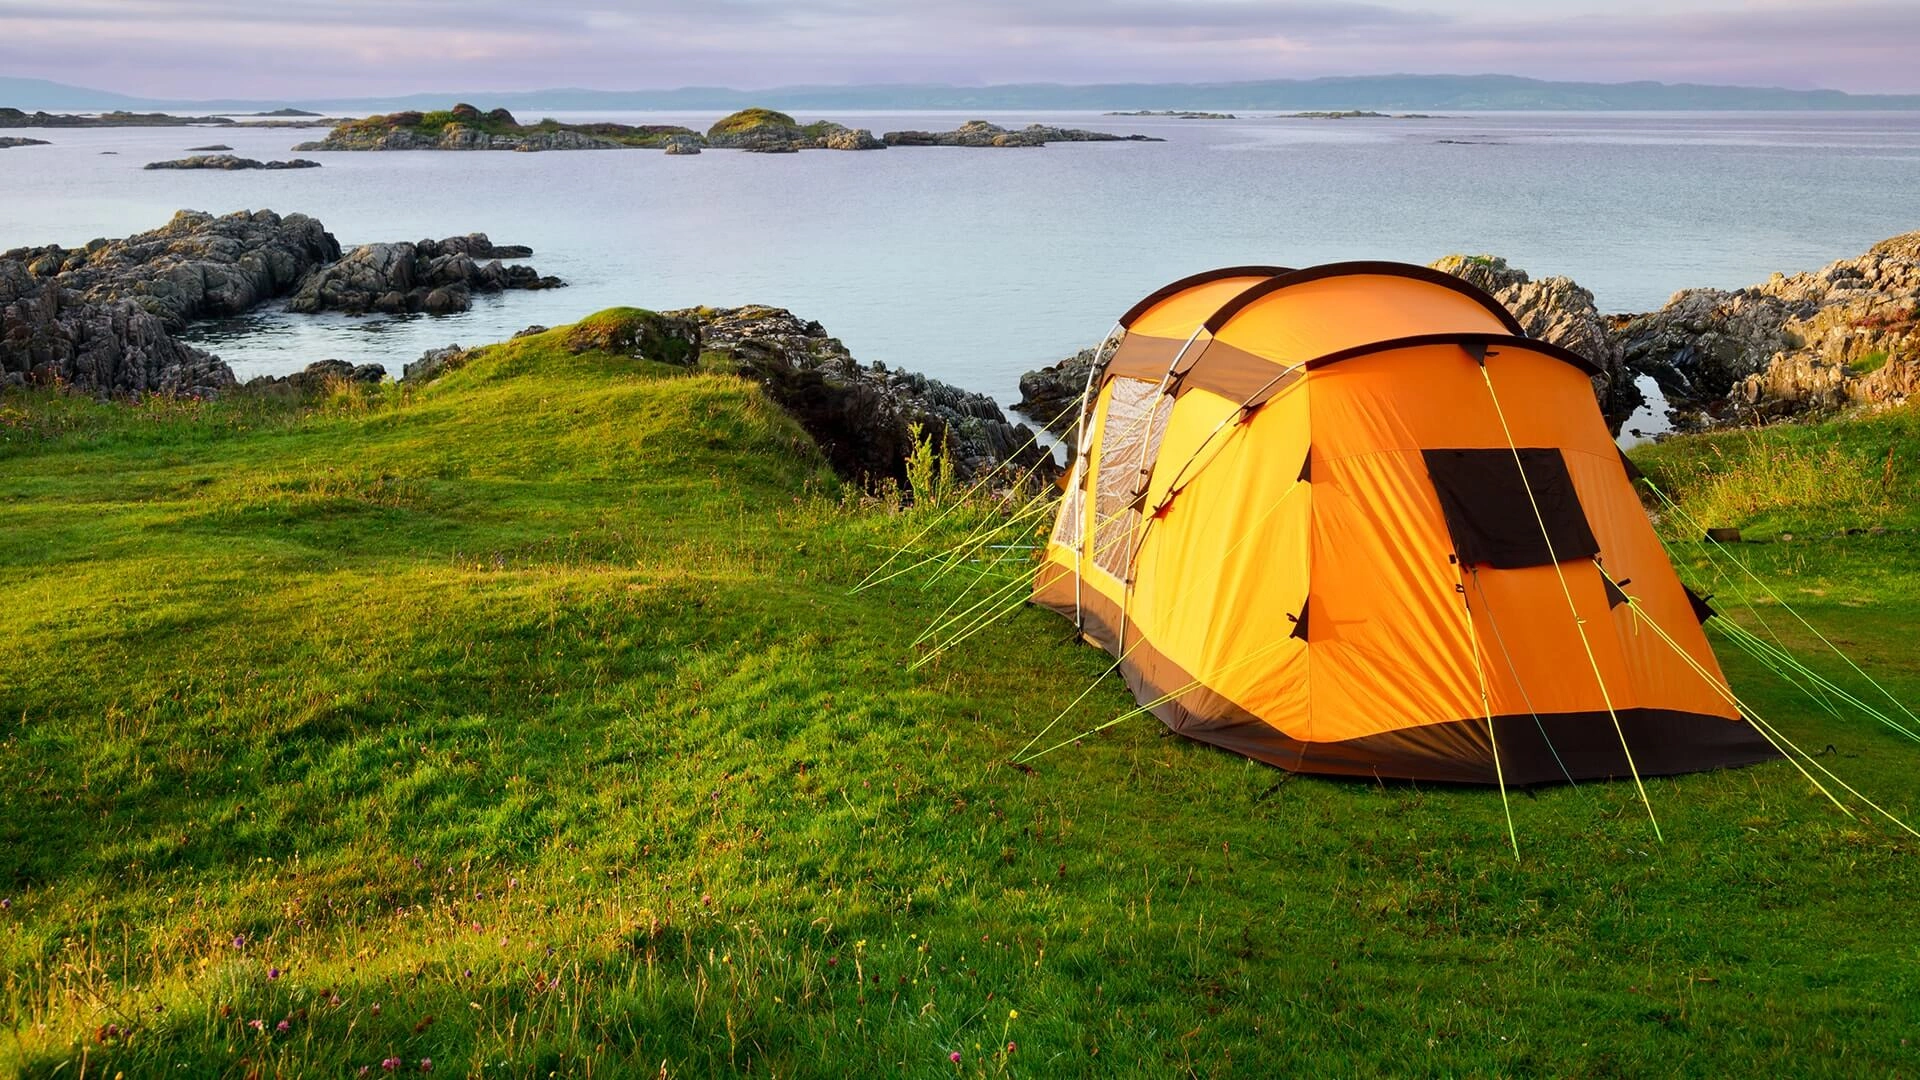 Палатка на природе. Палатка на берегу моря. Палатки для кемпинга. Поход. Топ кемпинг